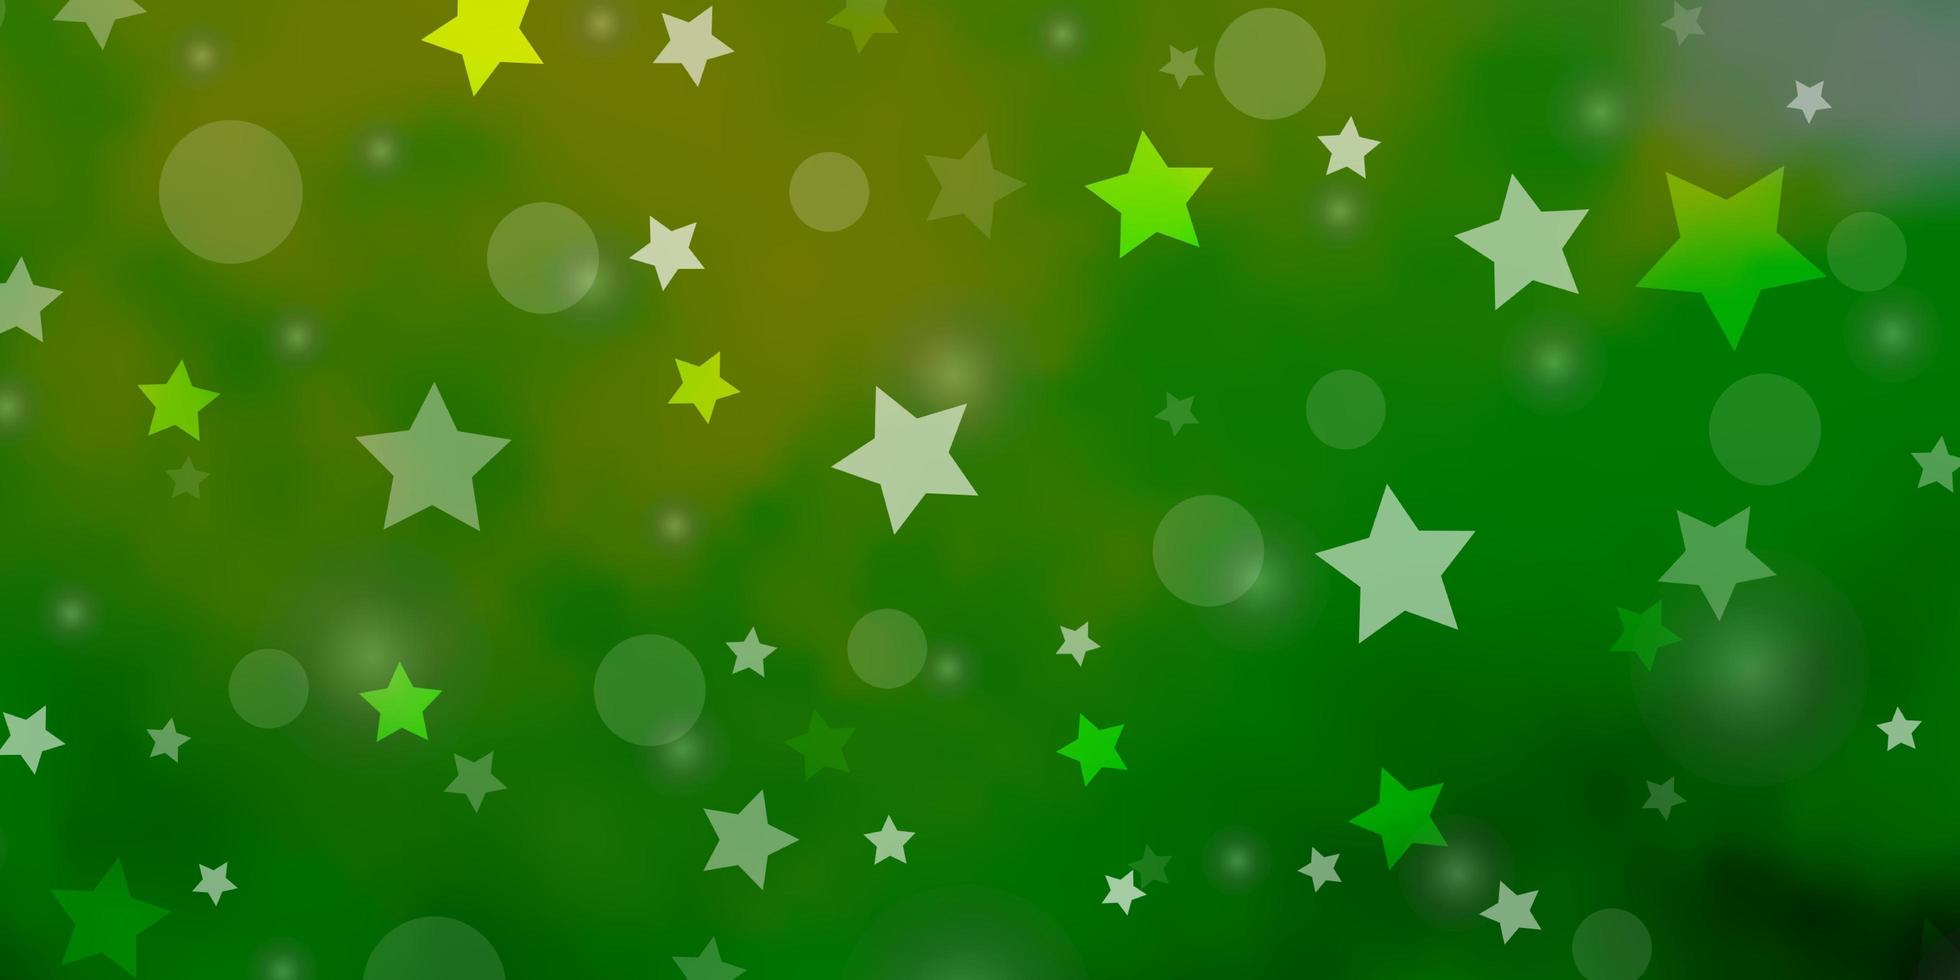 sfondo vettoriale giallo verde chiaro con cerchi stelle